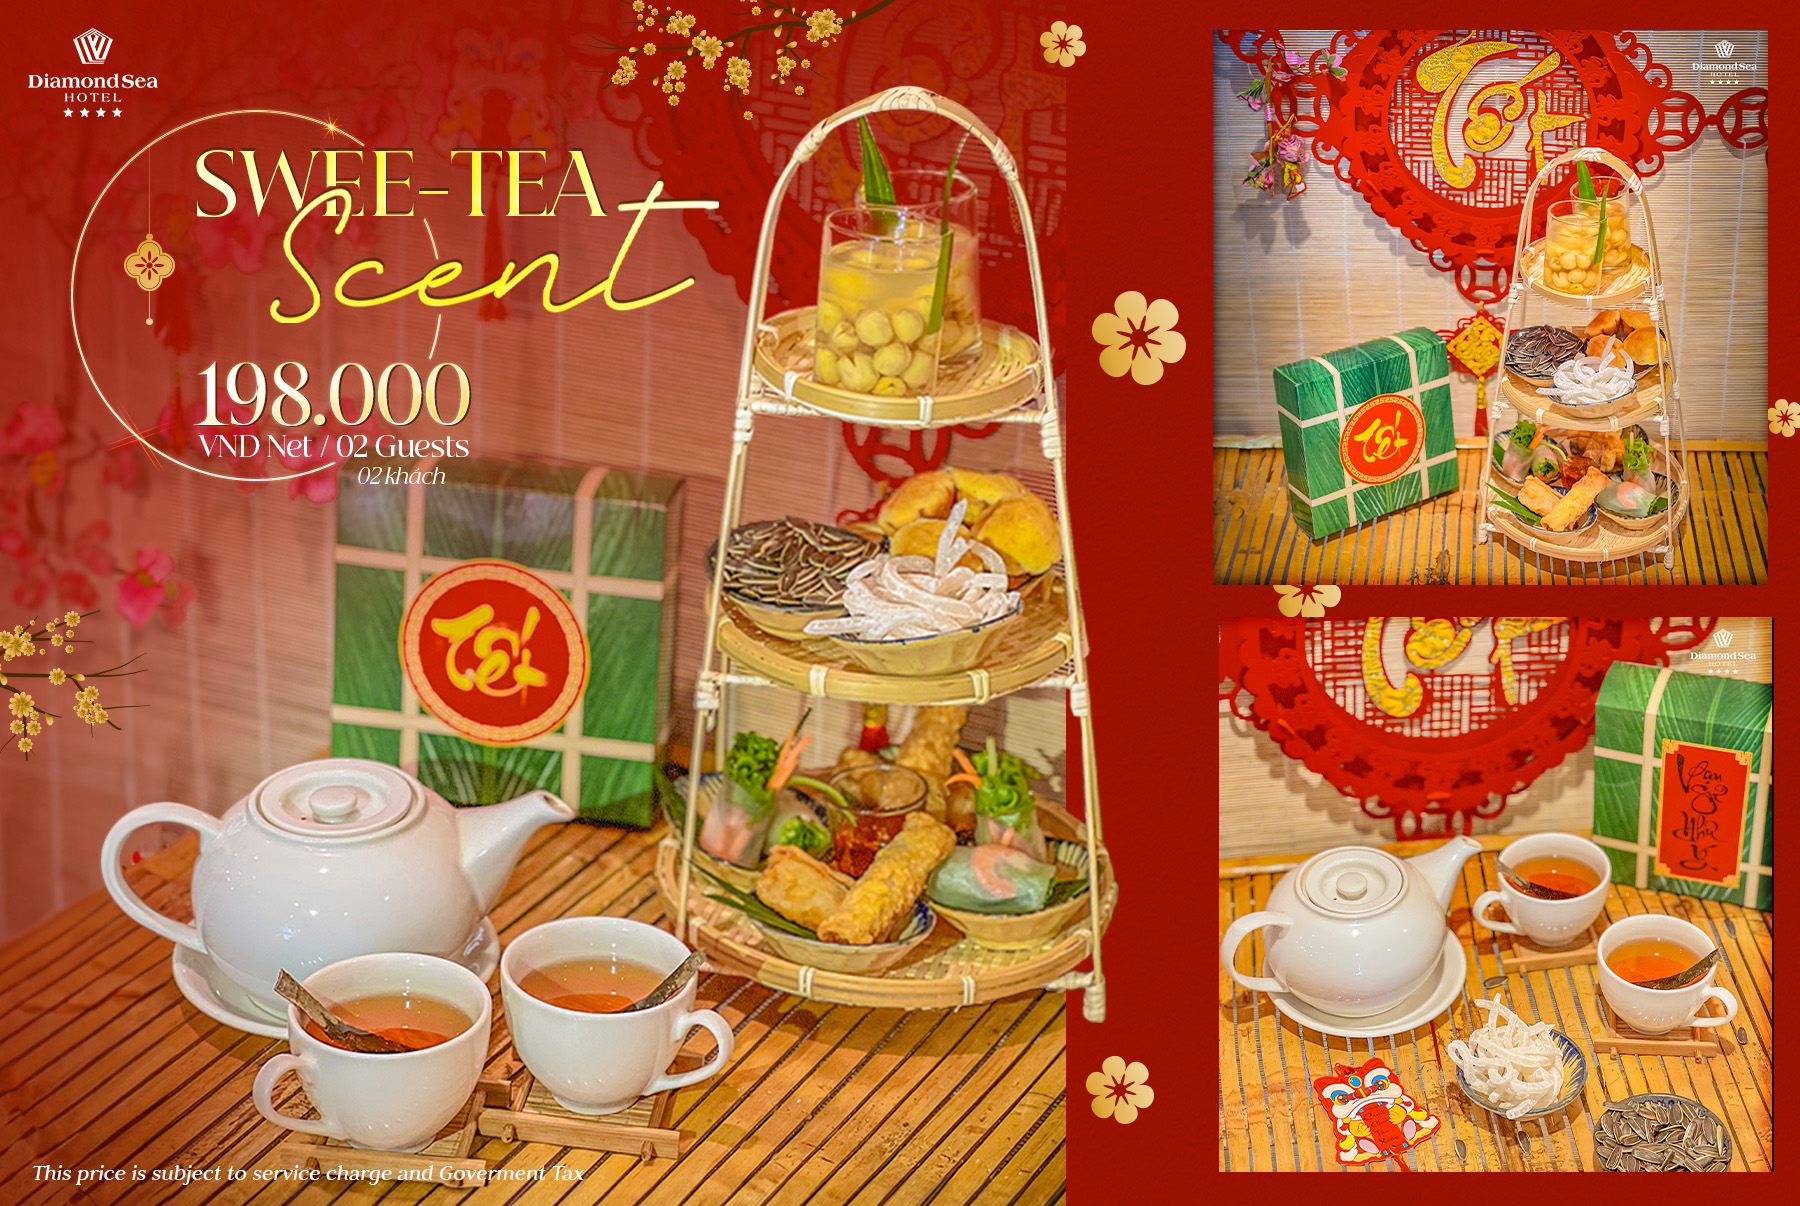 "Swee-Tea Scent": High Tea In The Vietnamese Way